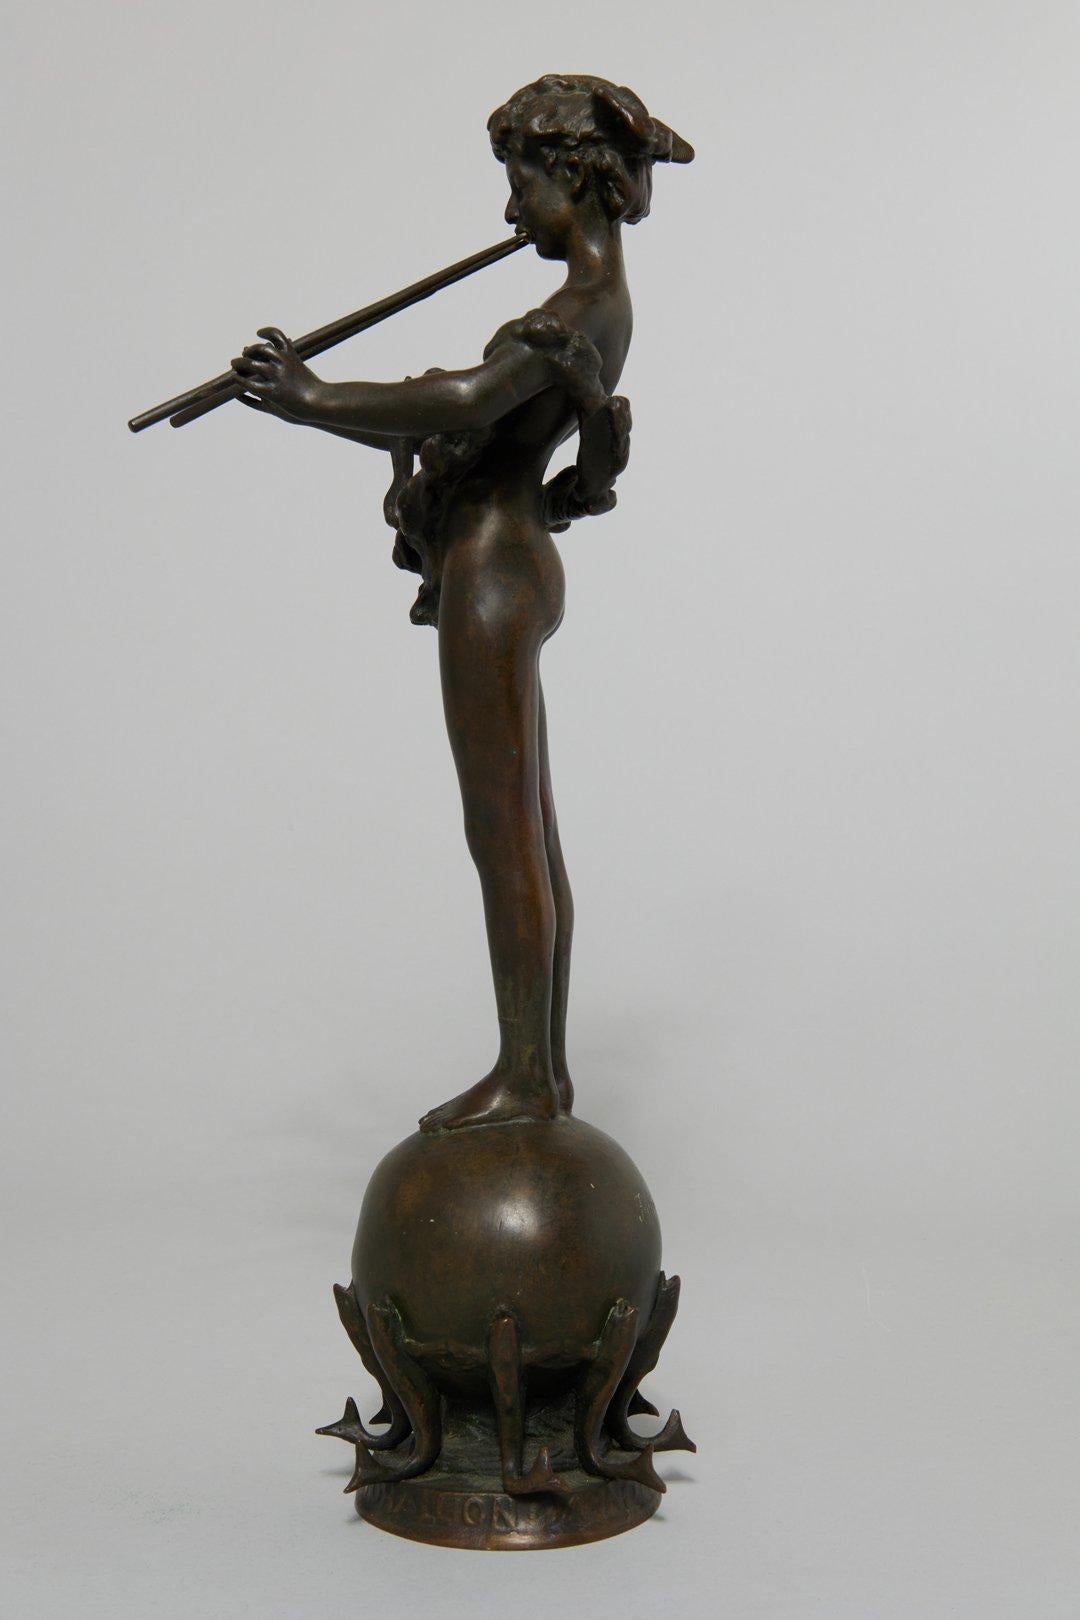 Pan de Rohallion, 1889-90 sculpture classique en bronze - Sculpture de Frederick William MacMonnies